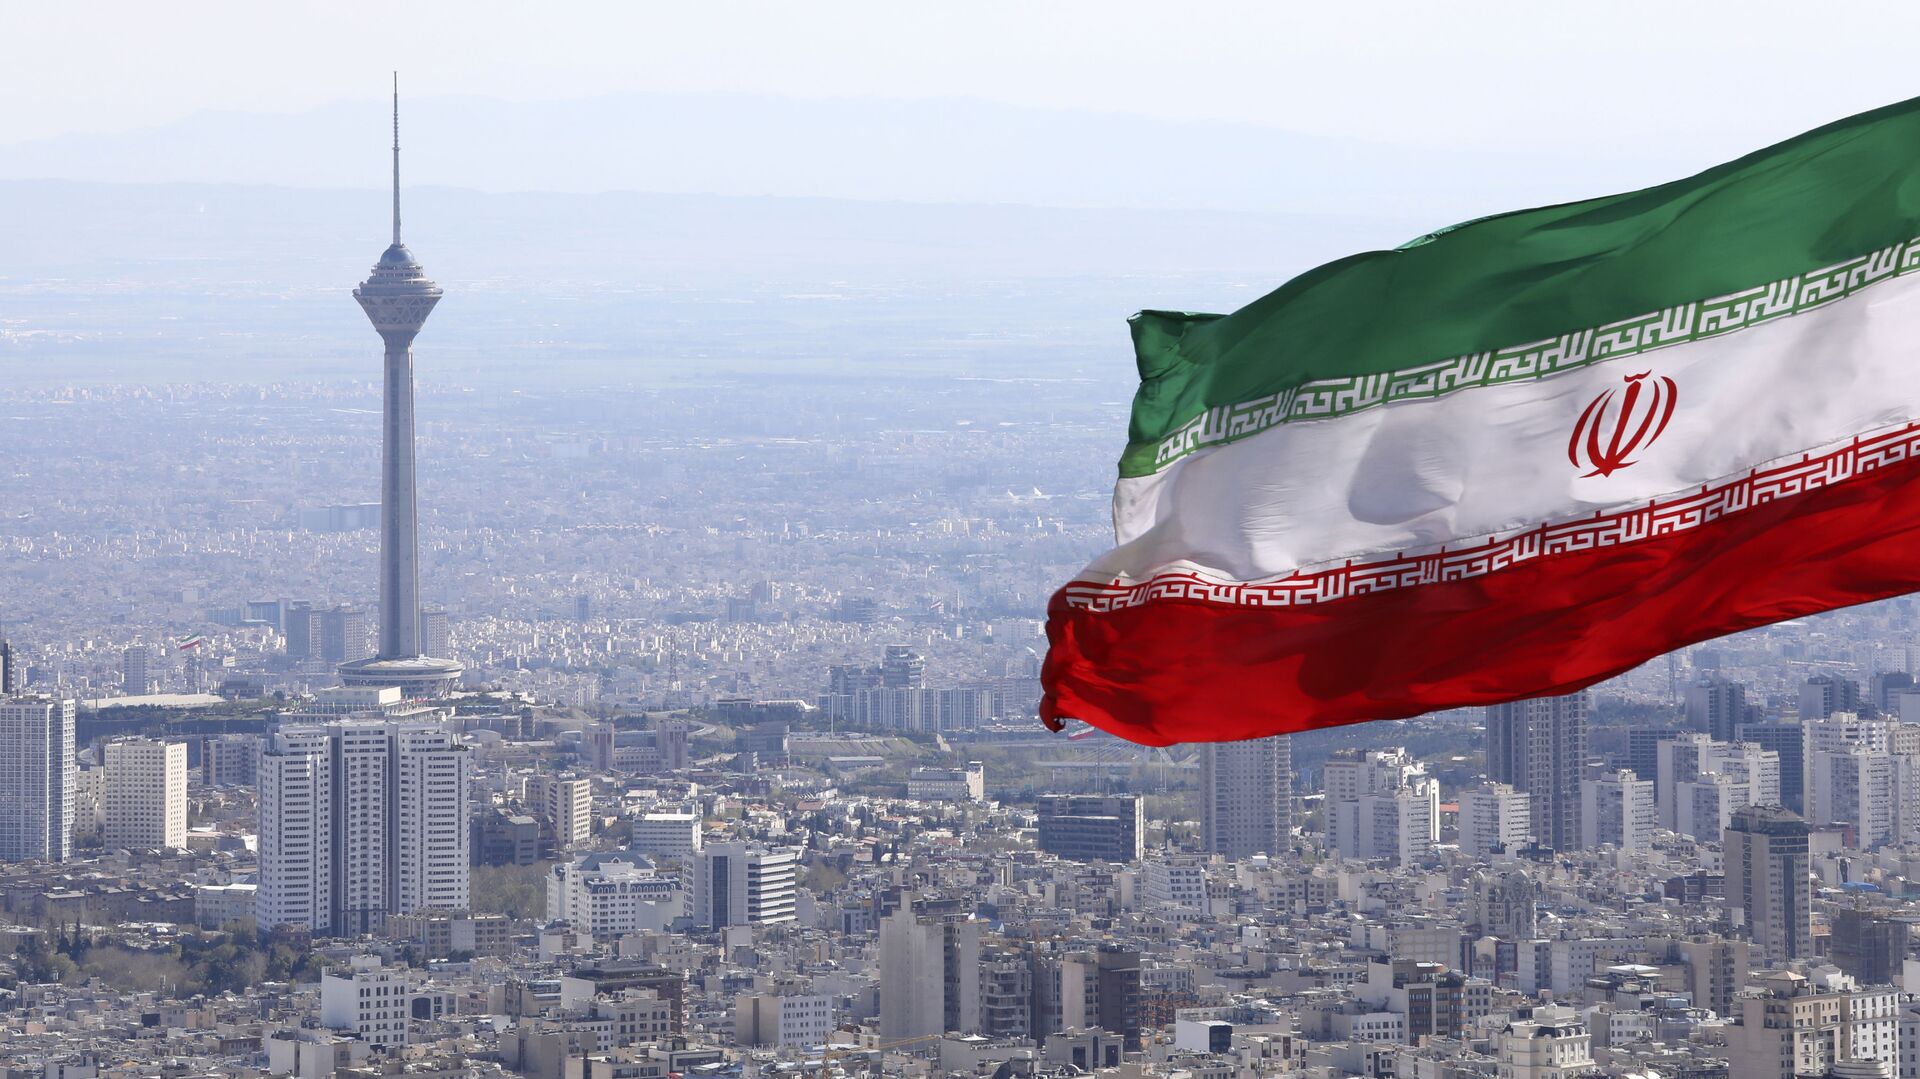 La bandera de Irán en la ciudad de Teherán - Sputnik Mundo, 1920, 13.12.2021